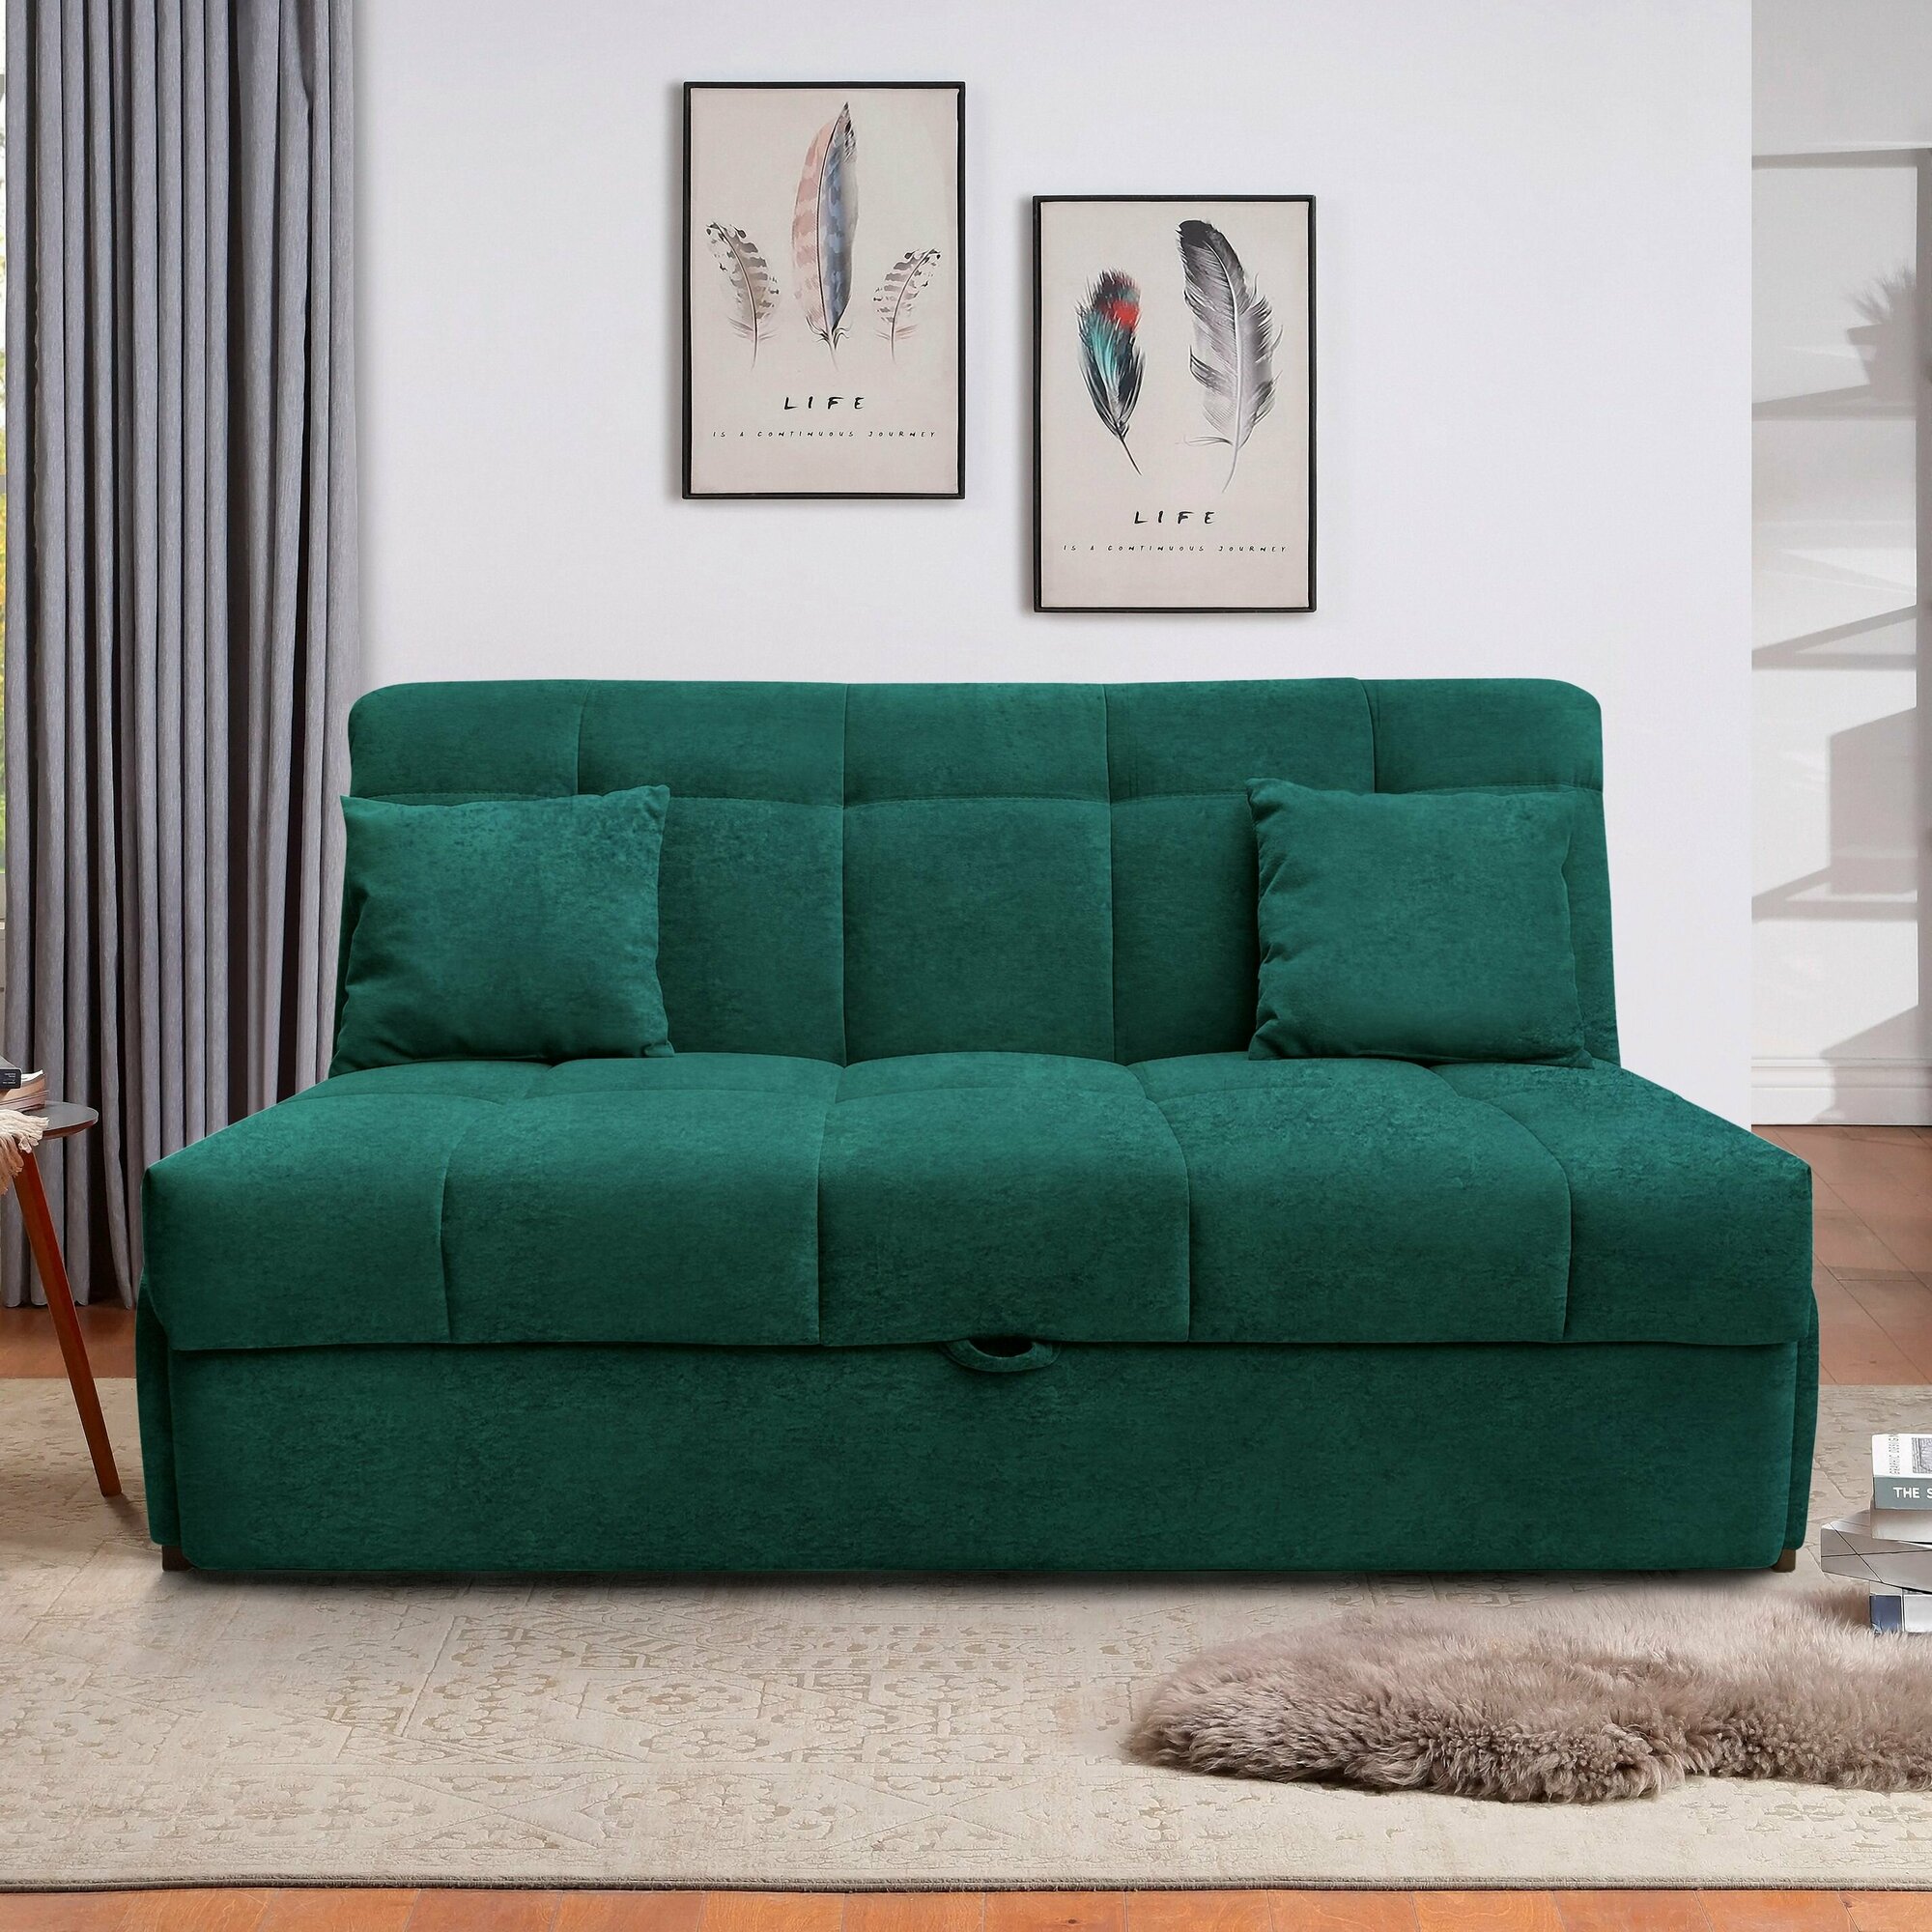 Пафос - диван-кровать Пафос (изумруд зеленый) с подушками для отдыха и сна, механизм аккордеон, без подлокотников, велюр, в прихожую, коридор, для балкона, дачи, детской, в зону ожидания офиса, салона - фотография № 1